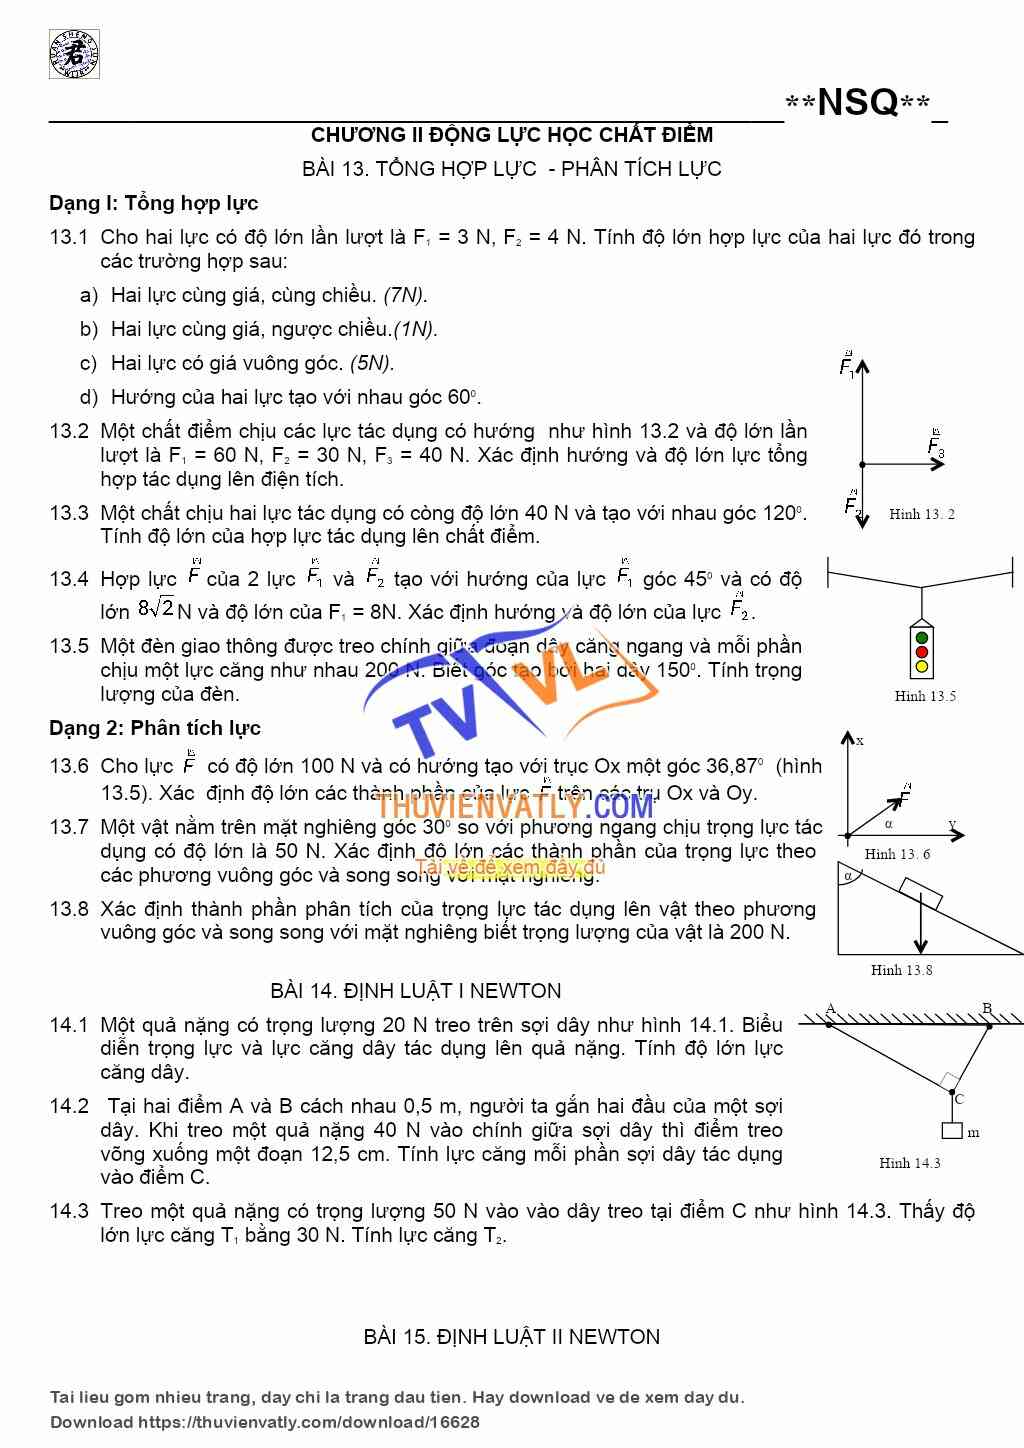 Bài tập chương II vật lý 10 nâng cao